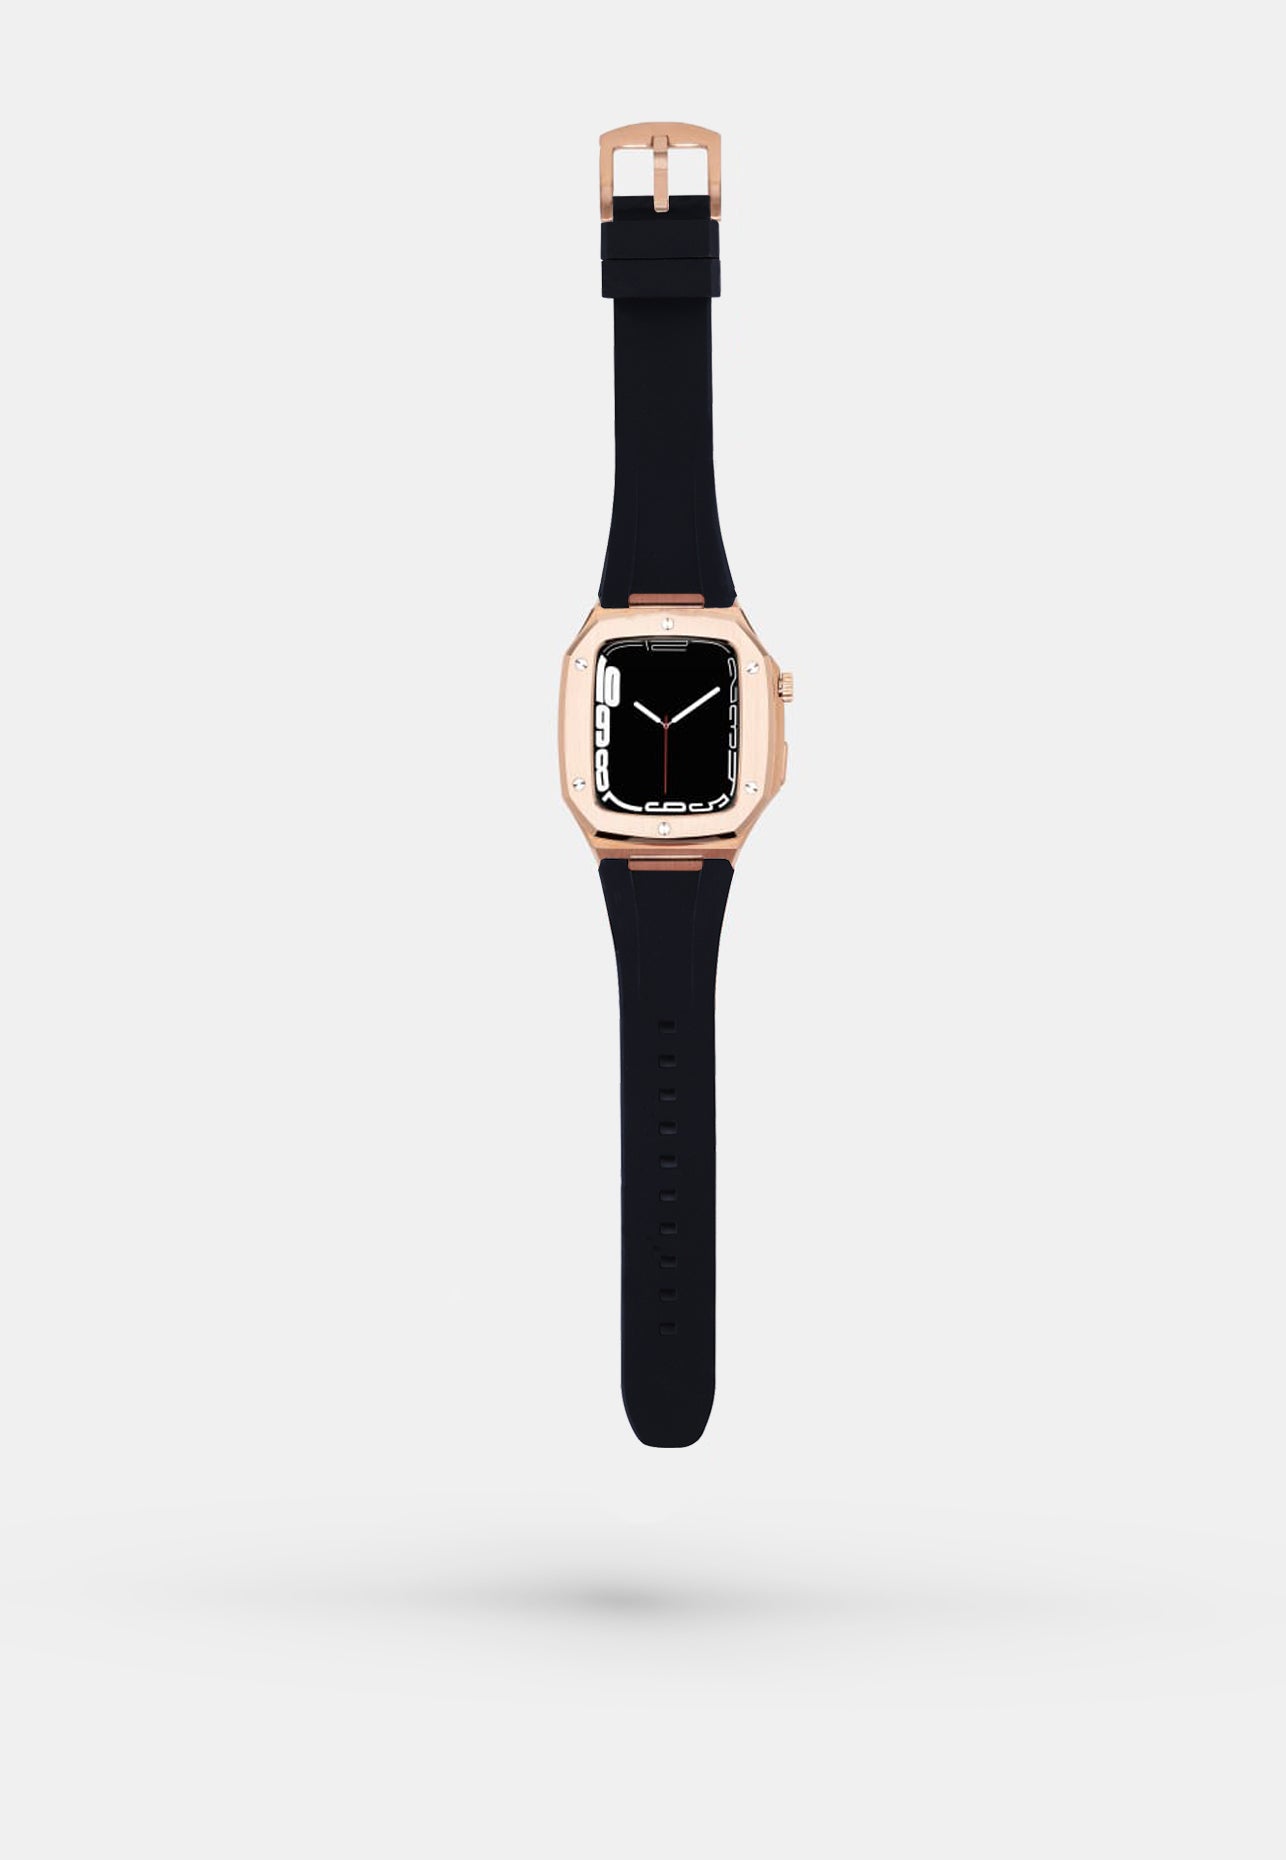 Everose Sport - Accessoire Apple Watch - Coque Or Rose et bracelet Silicone noir Appel Watch 44mm ouvert